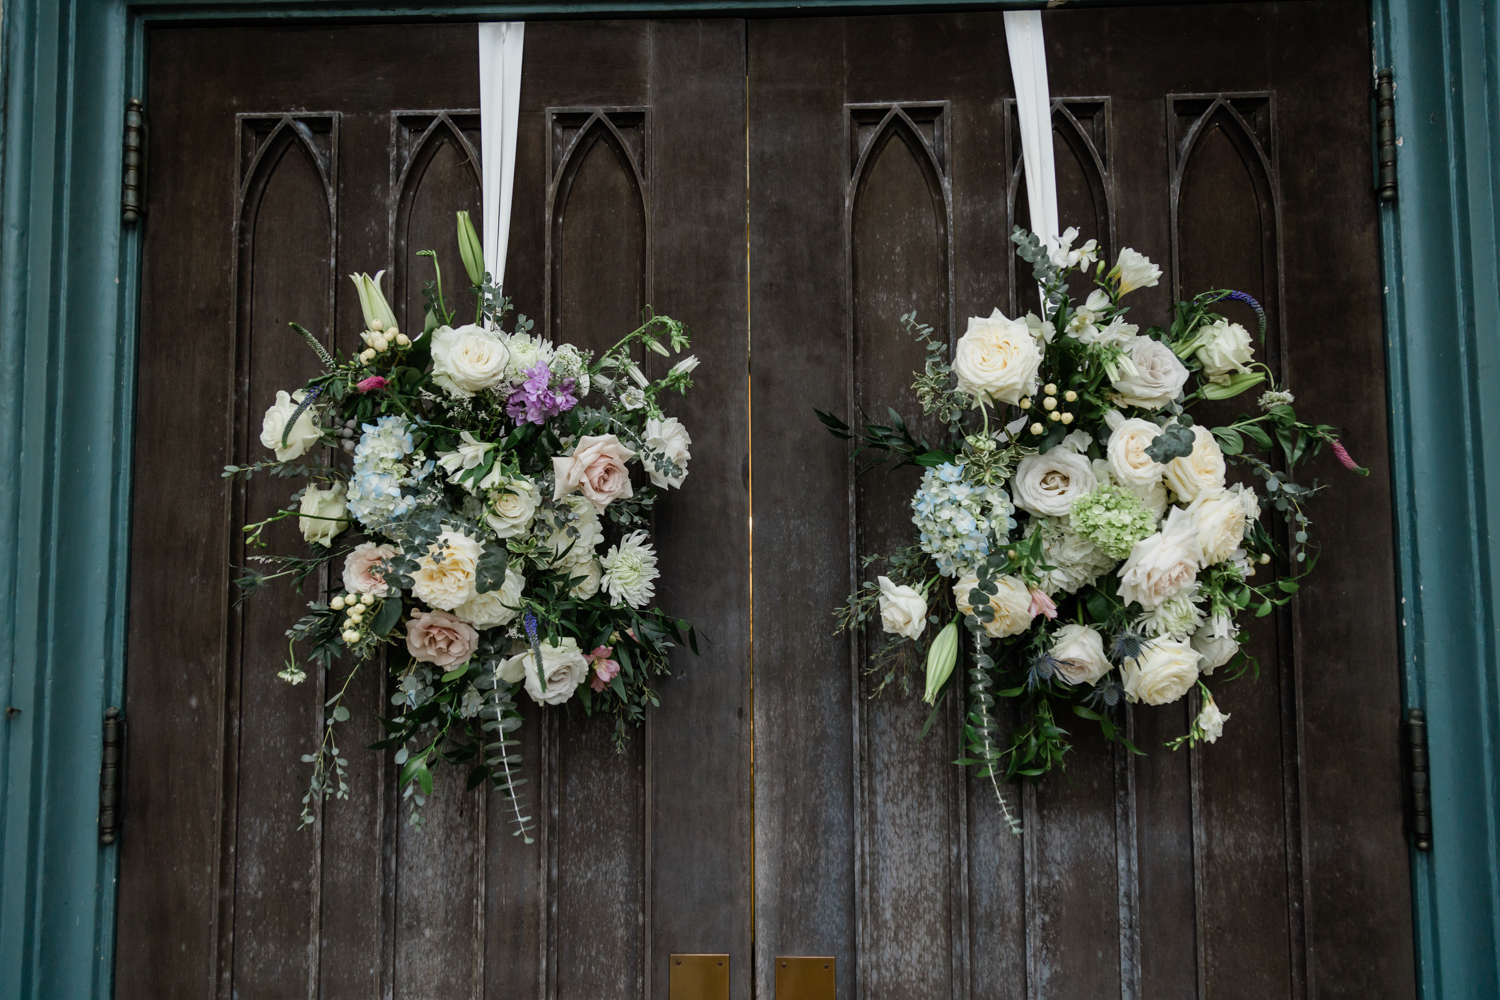 Floral wreaths on the church door